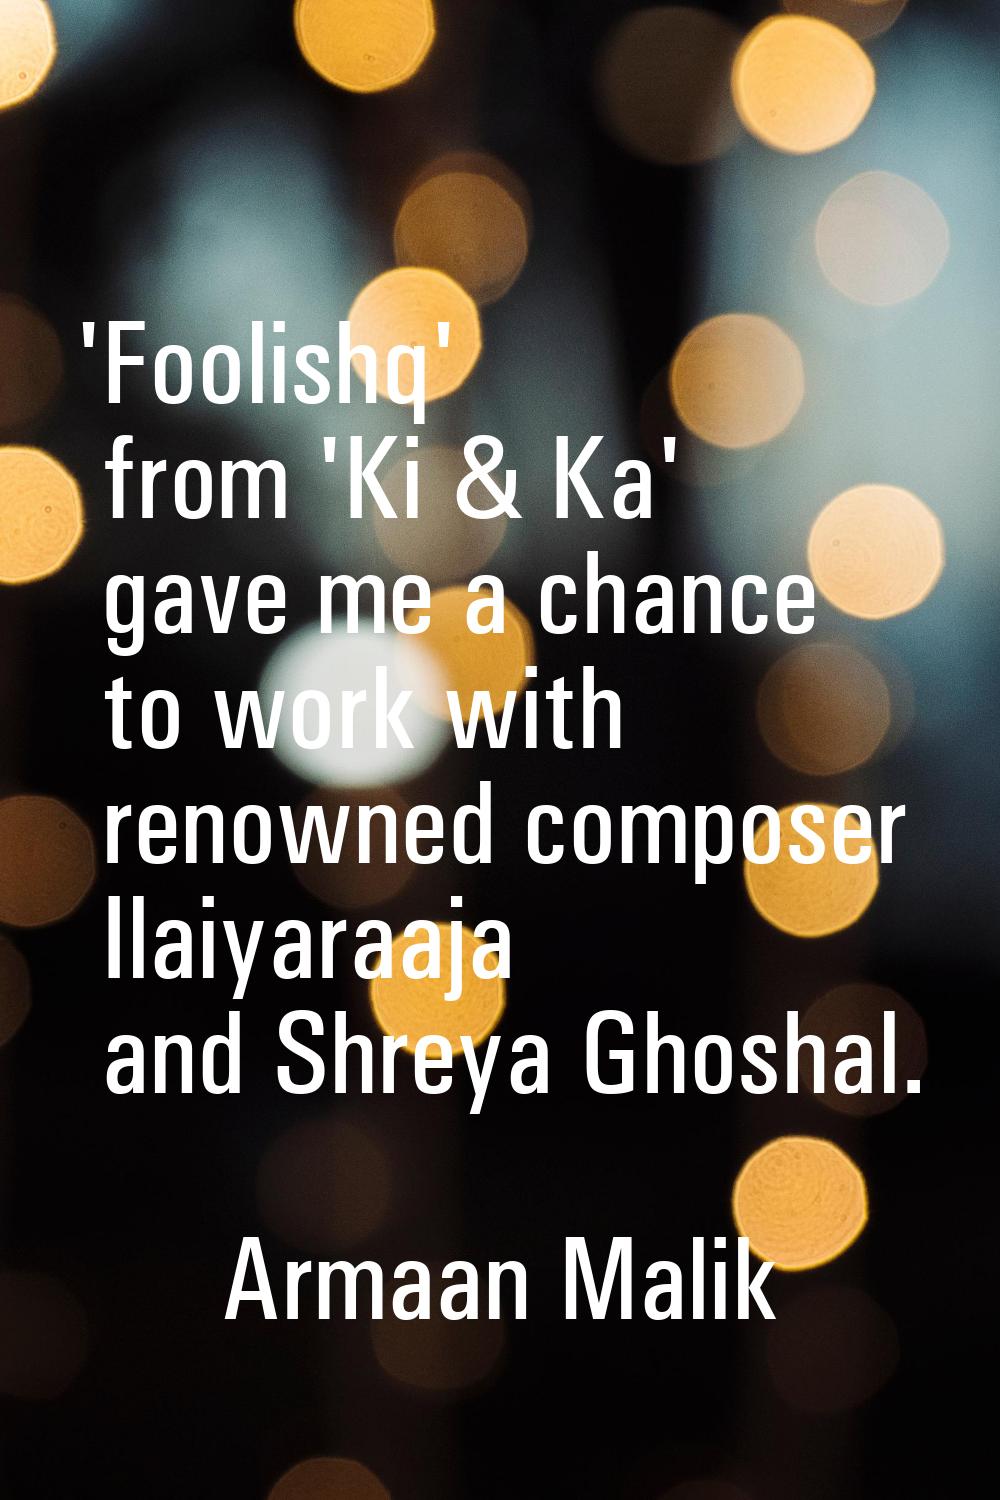 'Foolishq' from 'Ki & Ka' gave me a chance to work with renowned composer Ilaiyaraaja and Shreya Gh